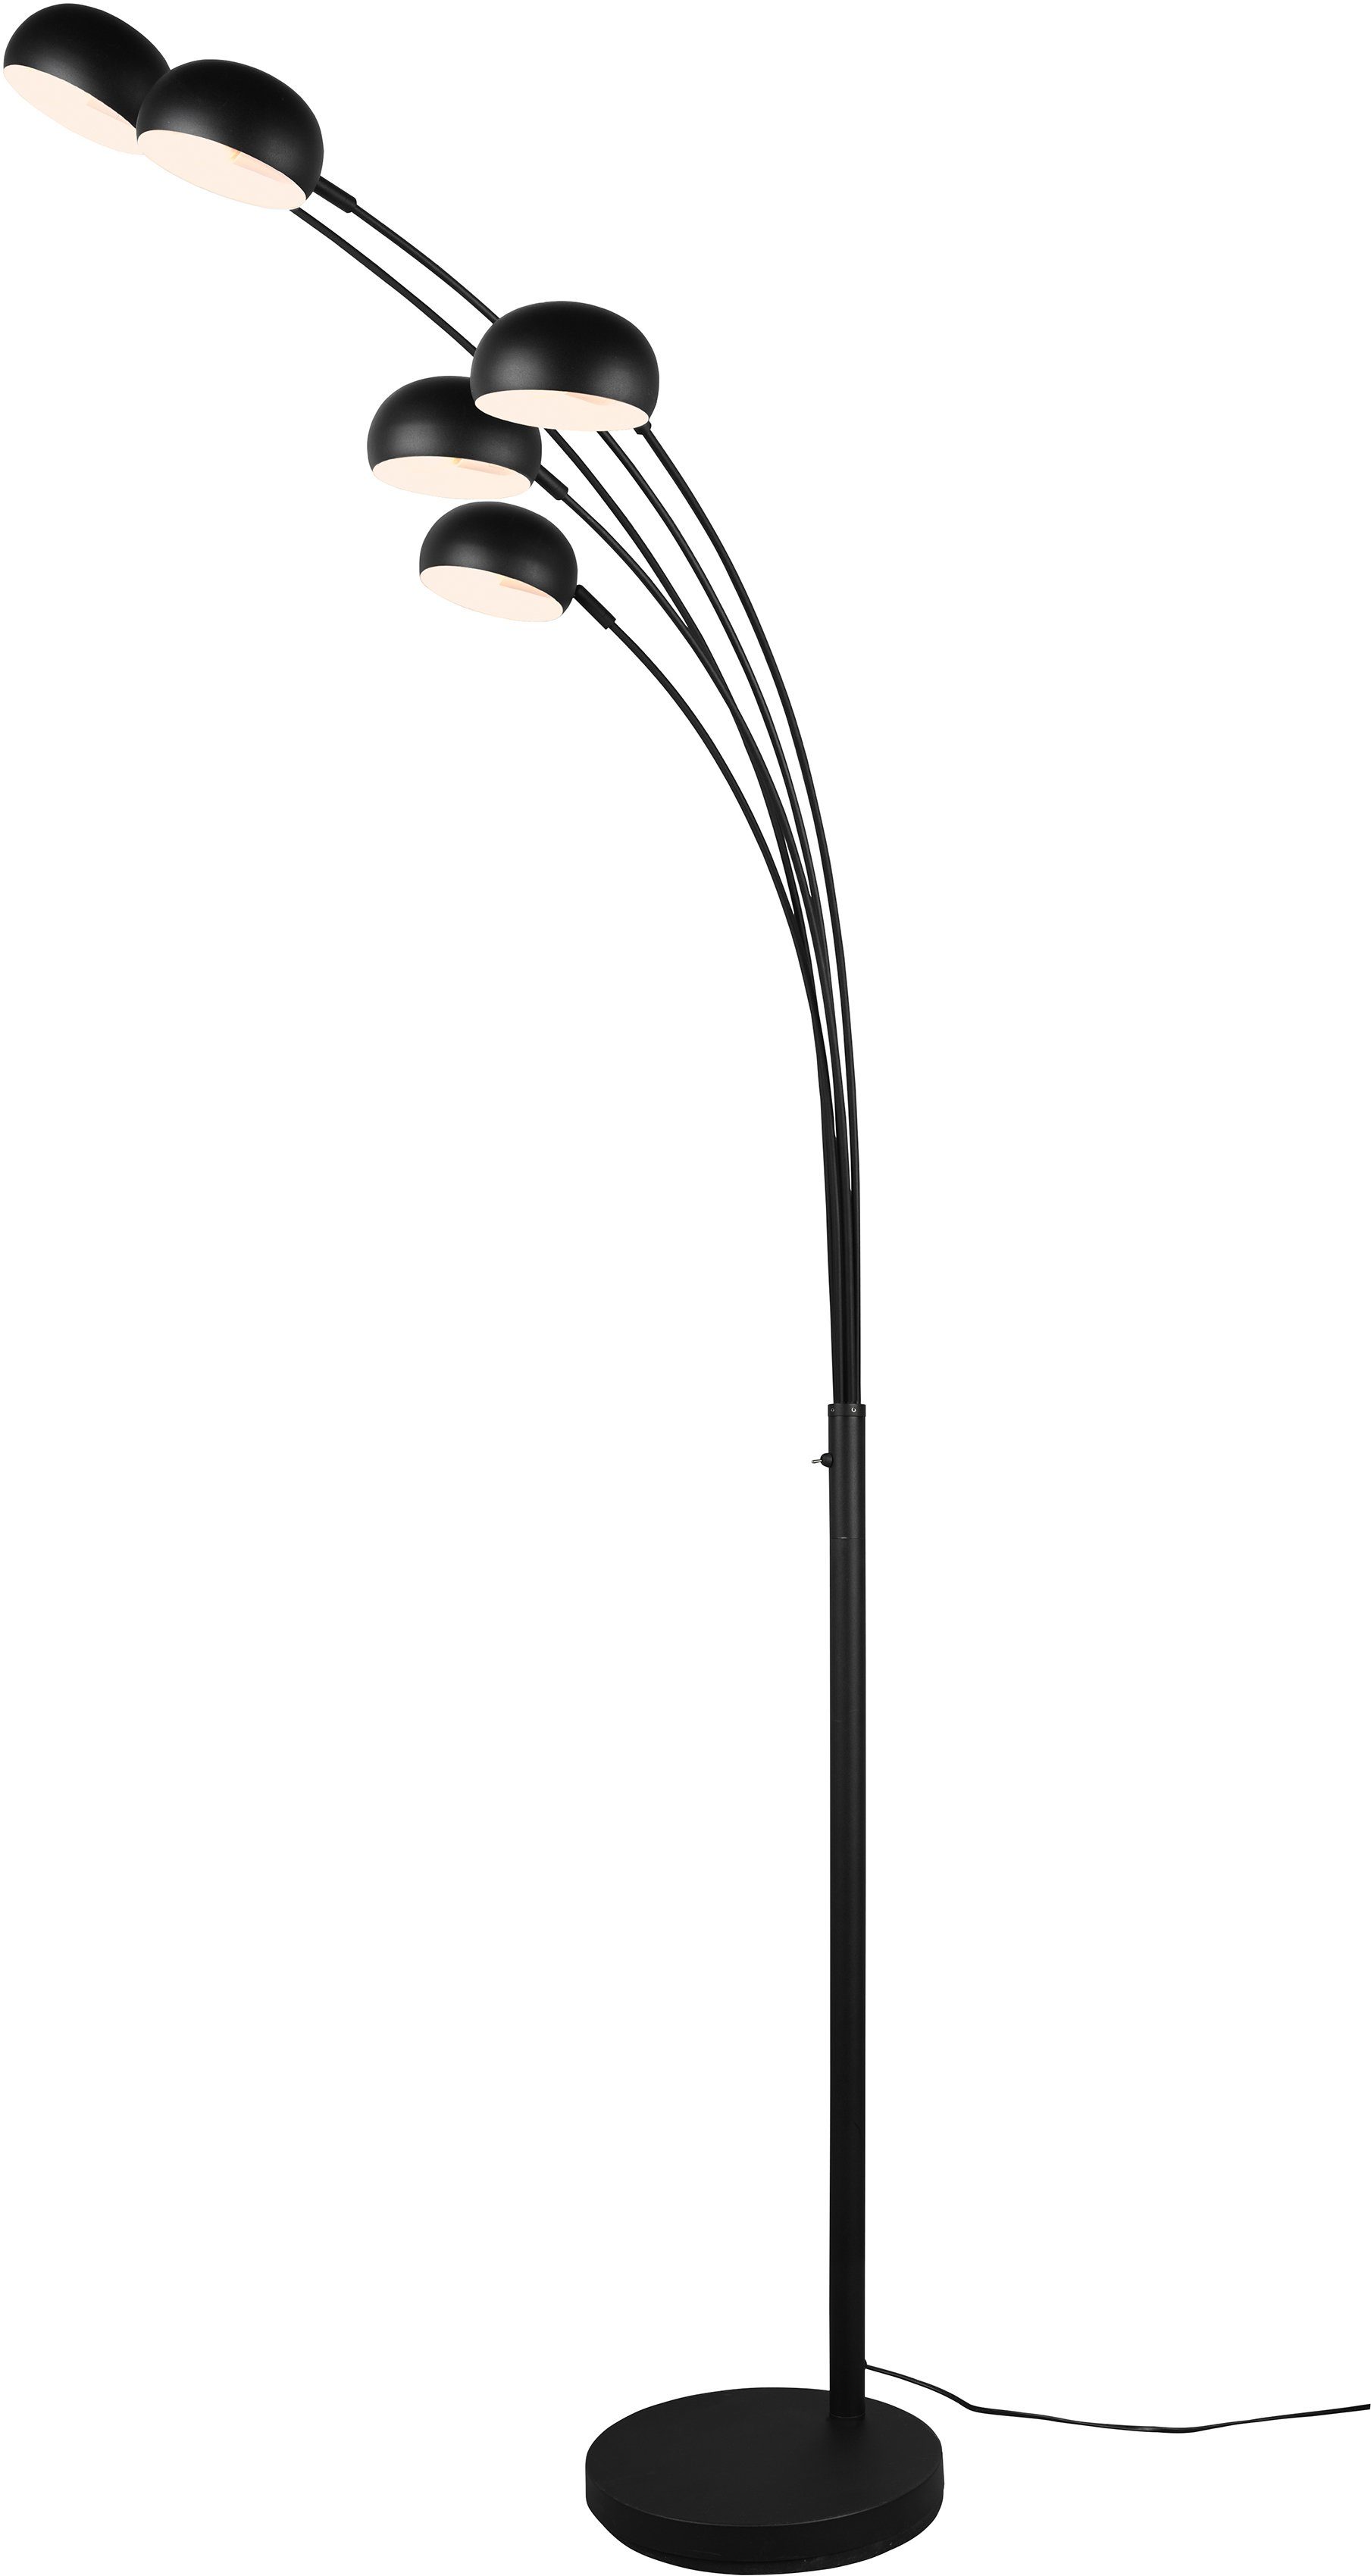 TRIO Leuchten Stehlampe DITO, Stehleuchte 5-flammig, Ein-/Ausschalter, ohne Leuchtmittel, Höhe 210 cm, Auslage 70 cm, mit 2 m Kabel, Kippschalter